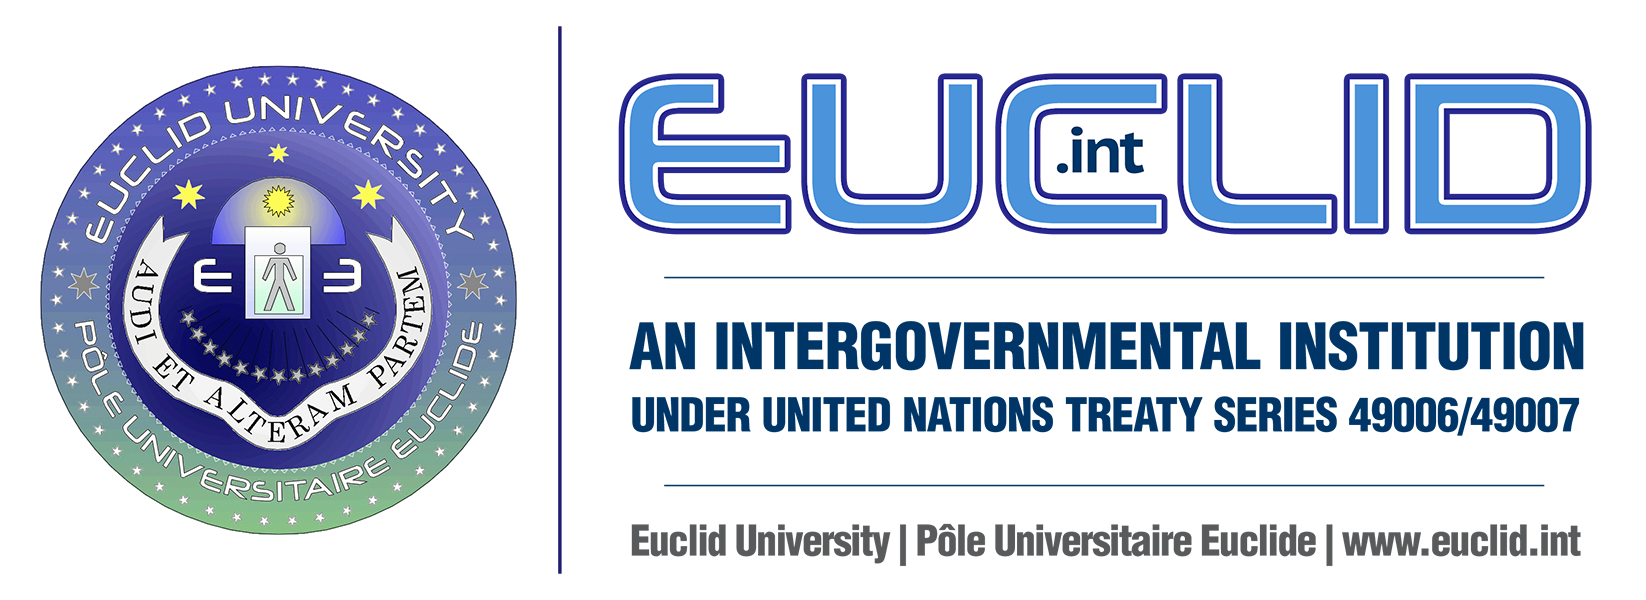 Euclid Euclid University Official Site